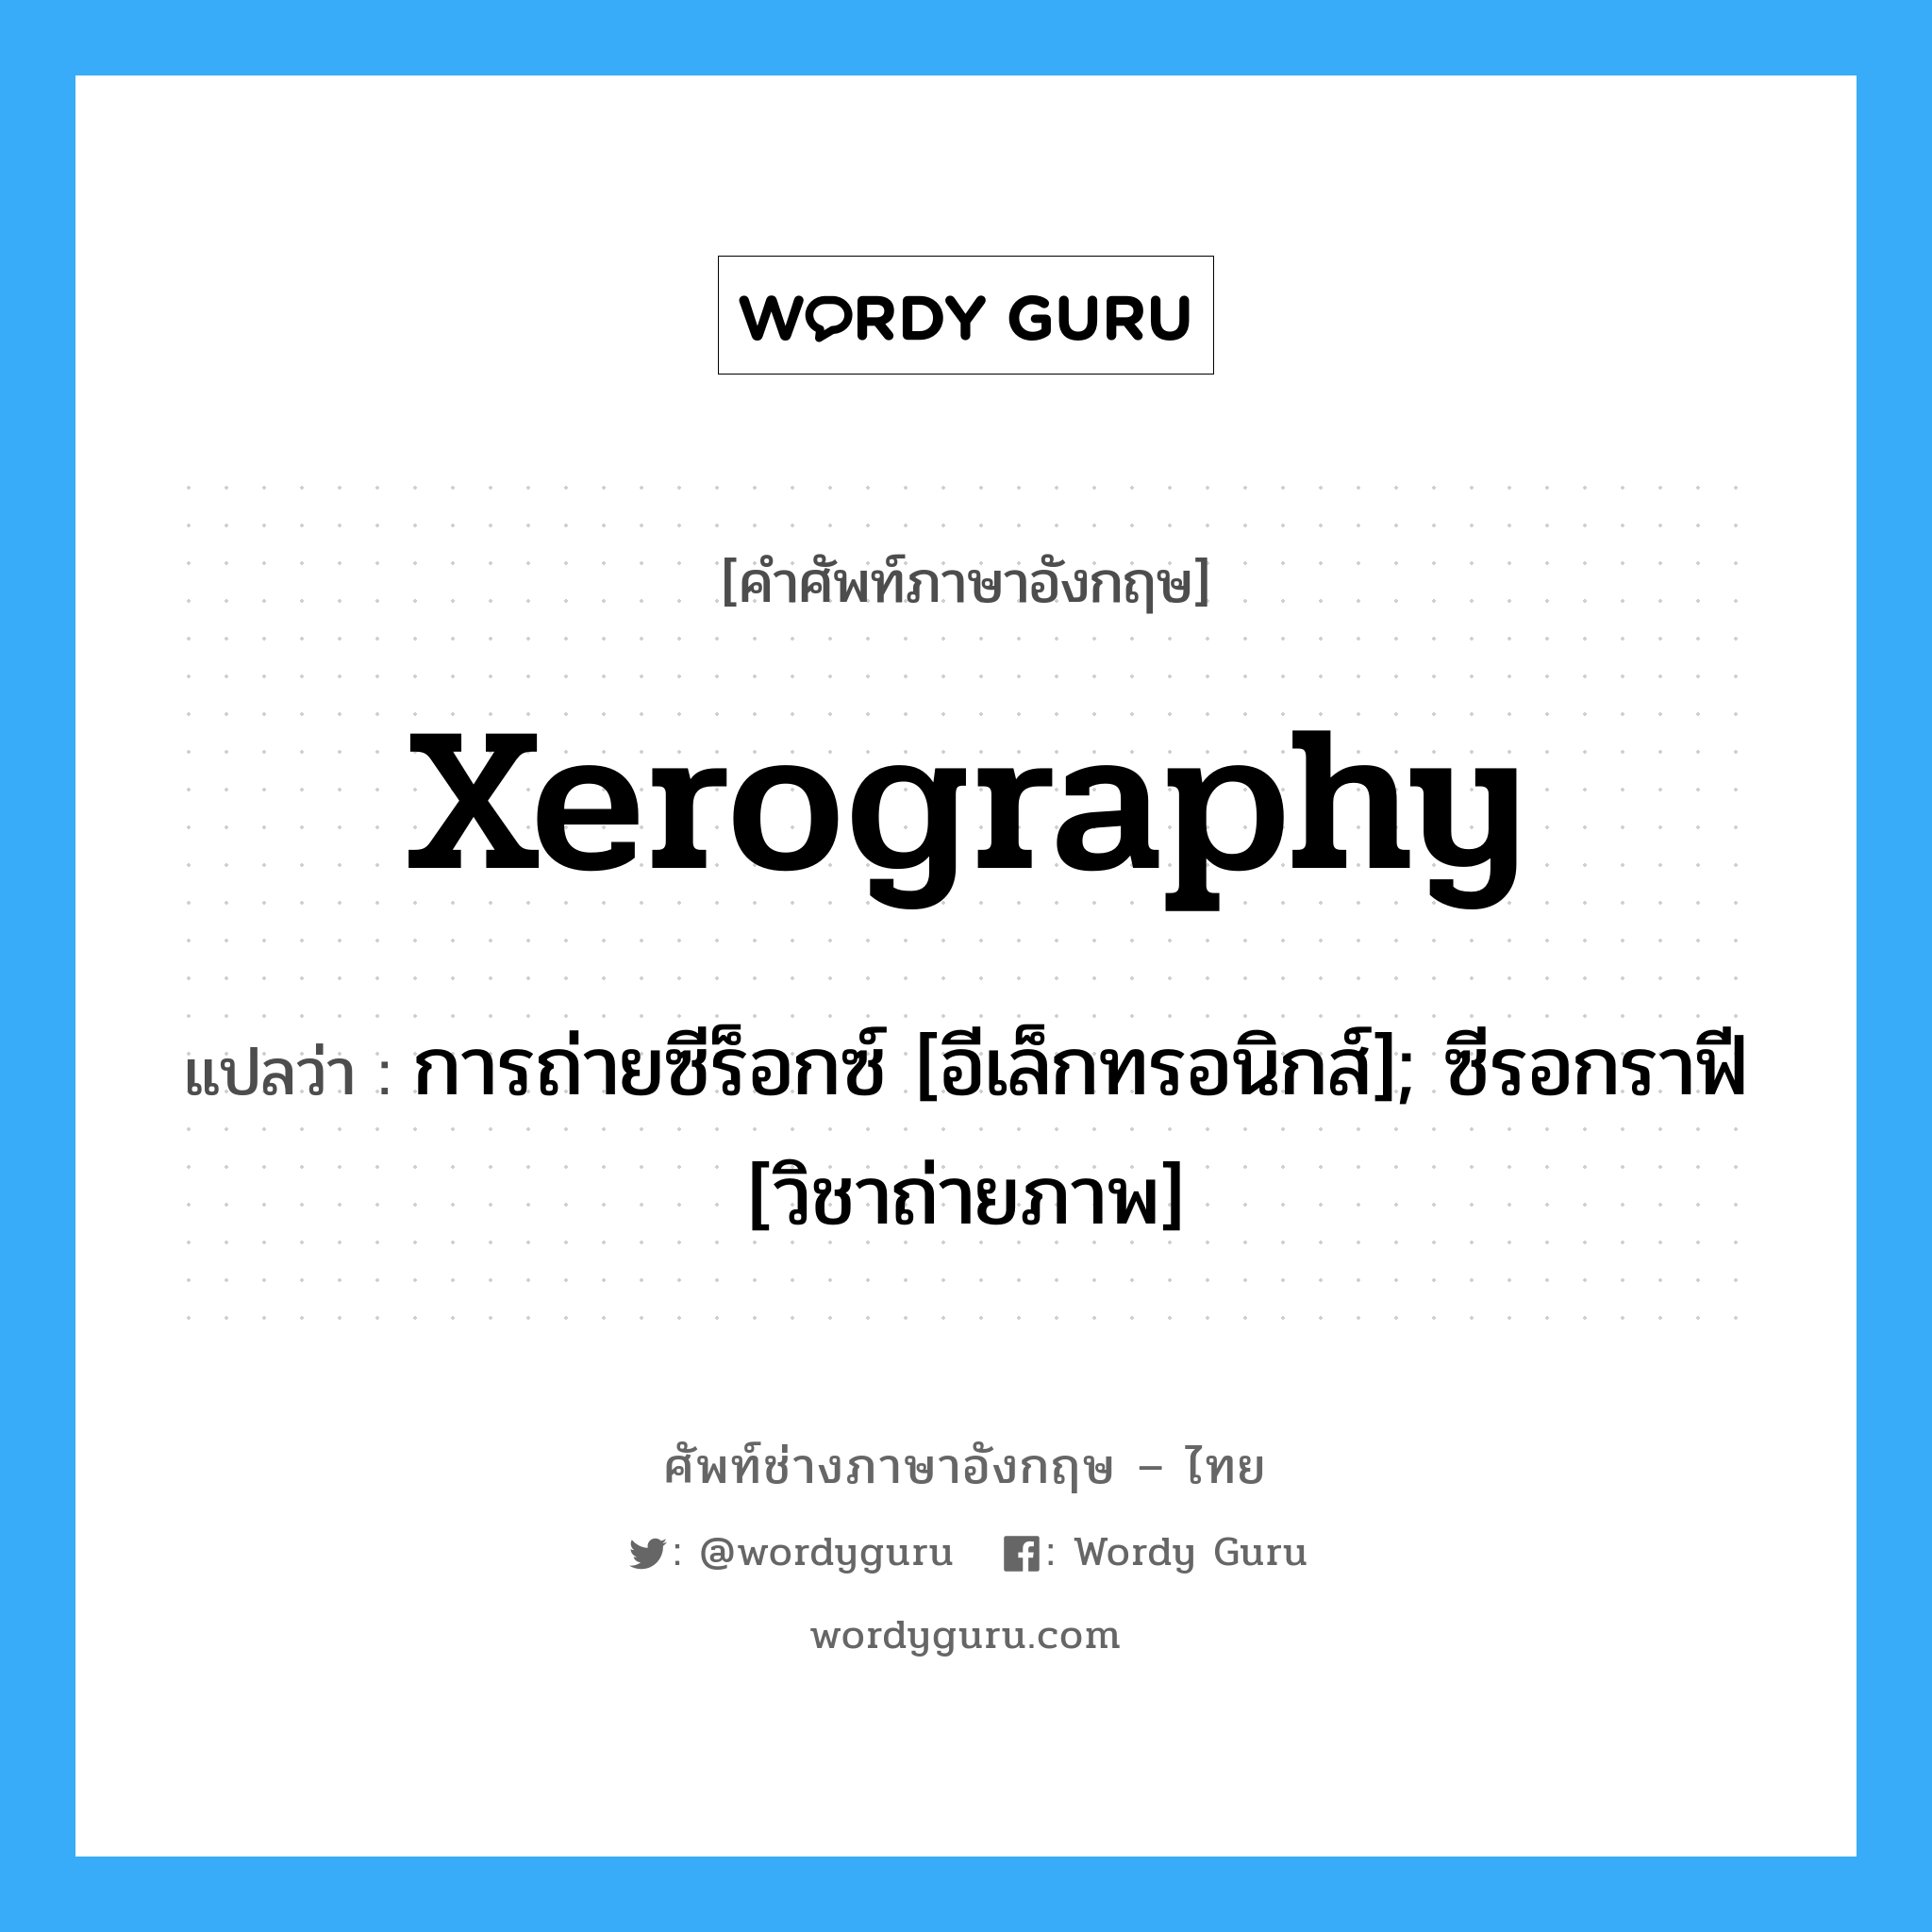 xerography แปลว่า?, คำศัพท์ช่างภาษาอังกฤษ - ไทย xerography คำศัพท์ภาษาอังกฤษ xerography แปลว่า การถ่ายซีร็อกซ์ [อีเล็กทรอนิกส์]; ซีรอกราฟี [วิชาถ่ายภาพ]